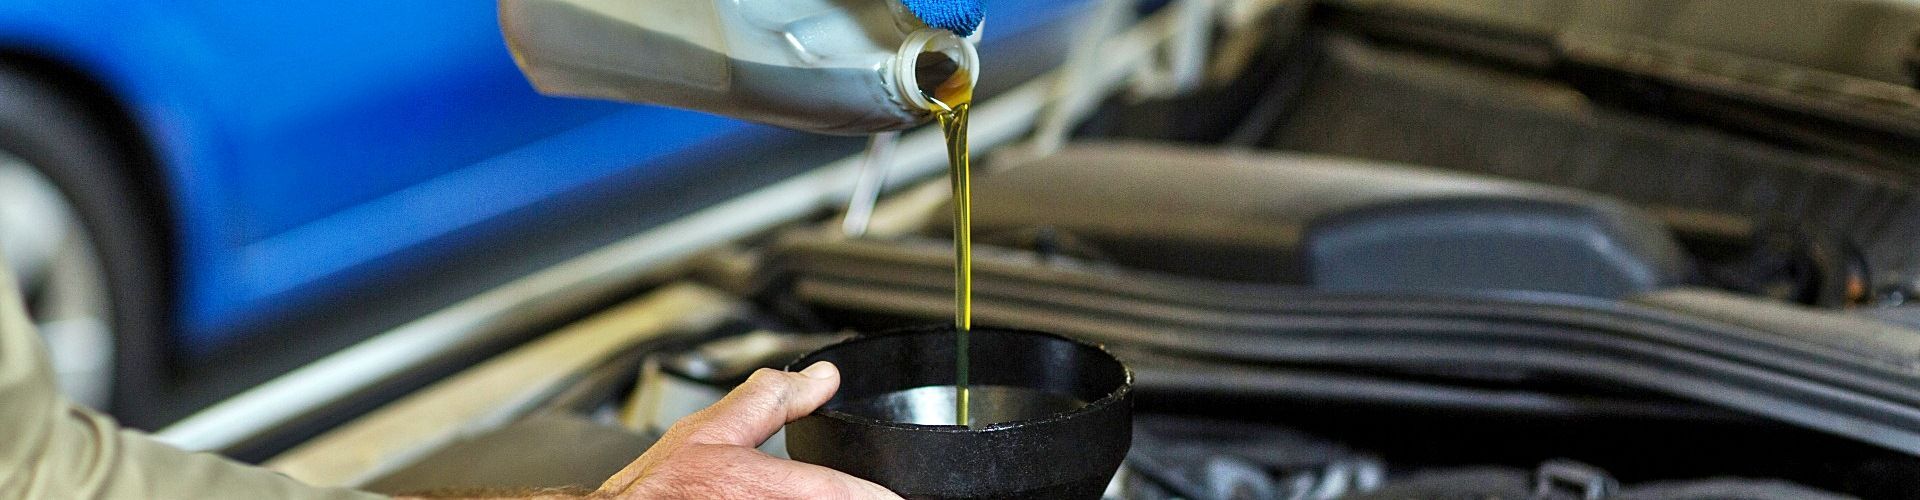 ¿cuál es el símbolo del aceite del coche?